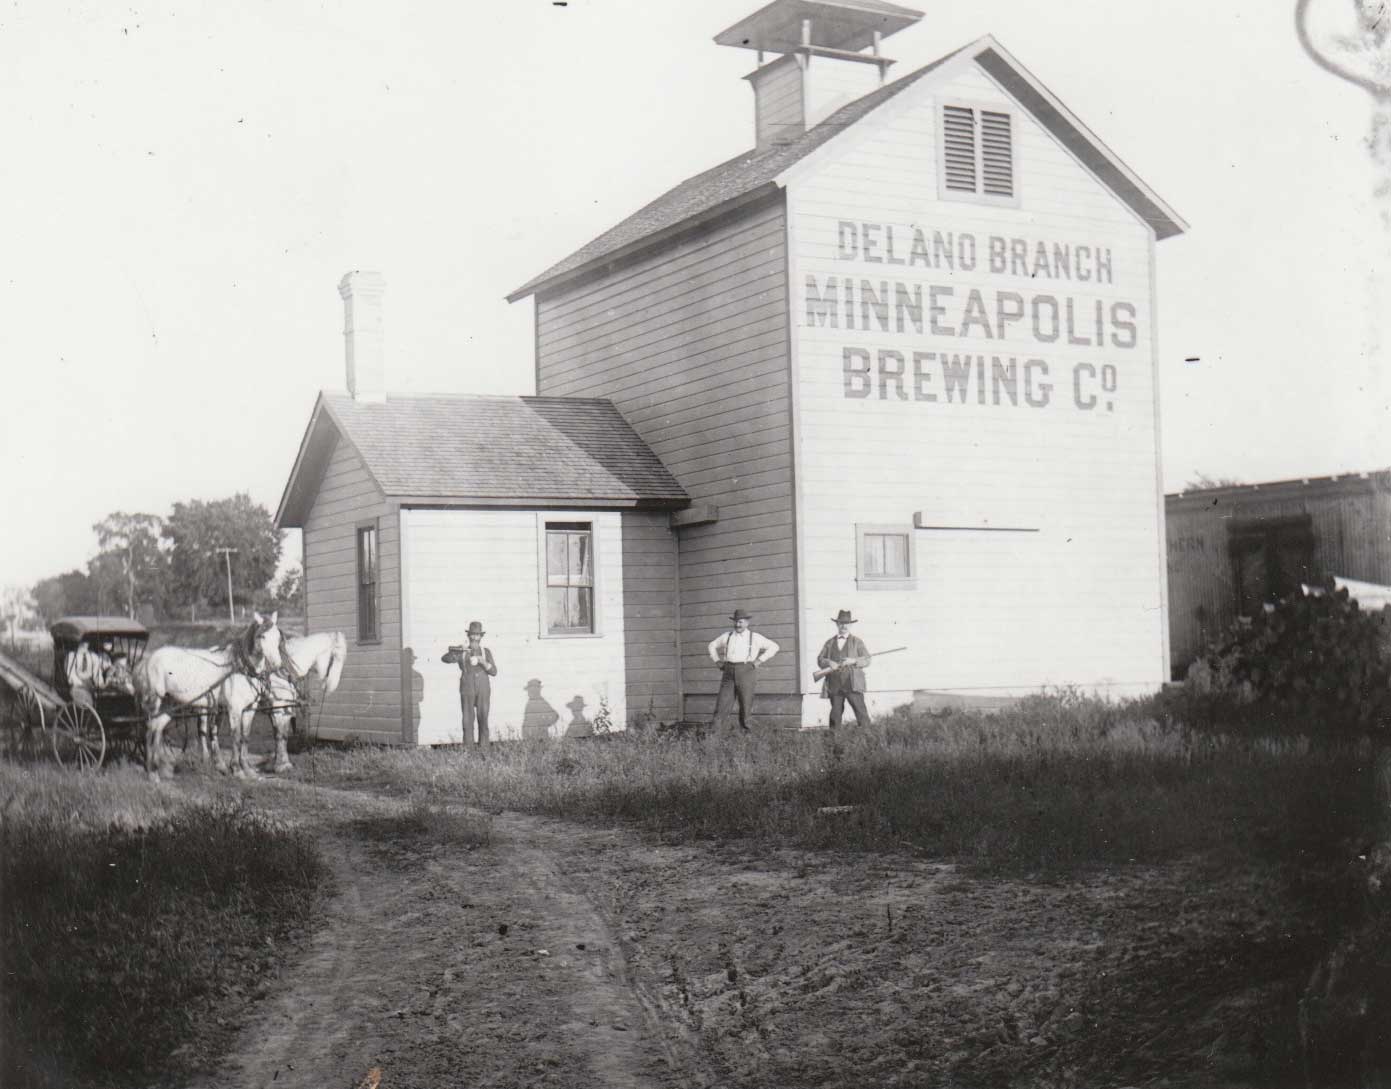 2. Delano Branch Brewing Company